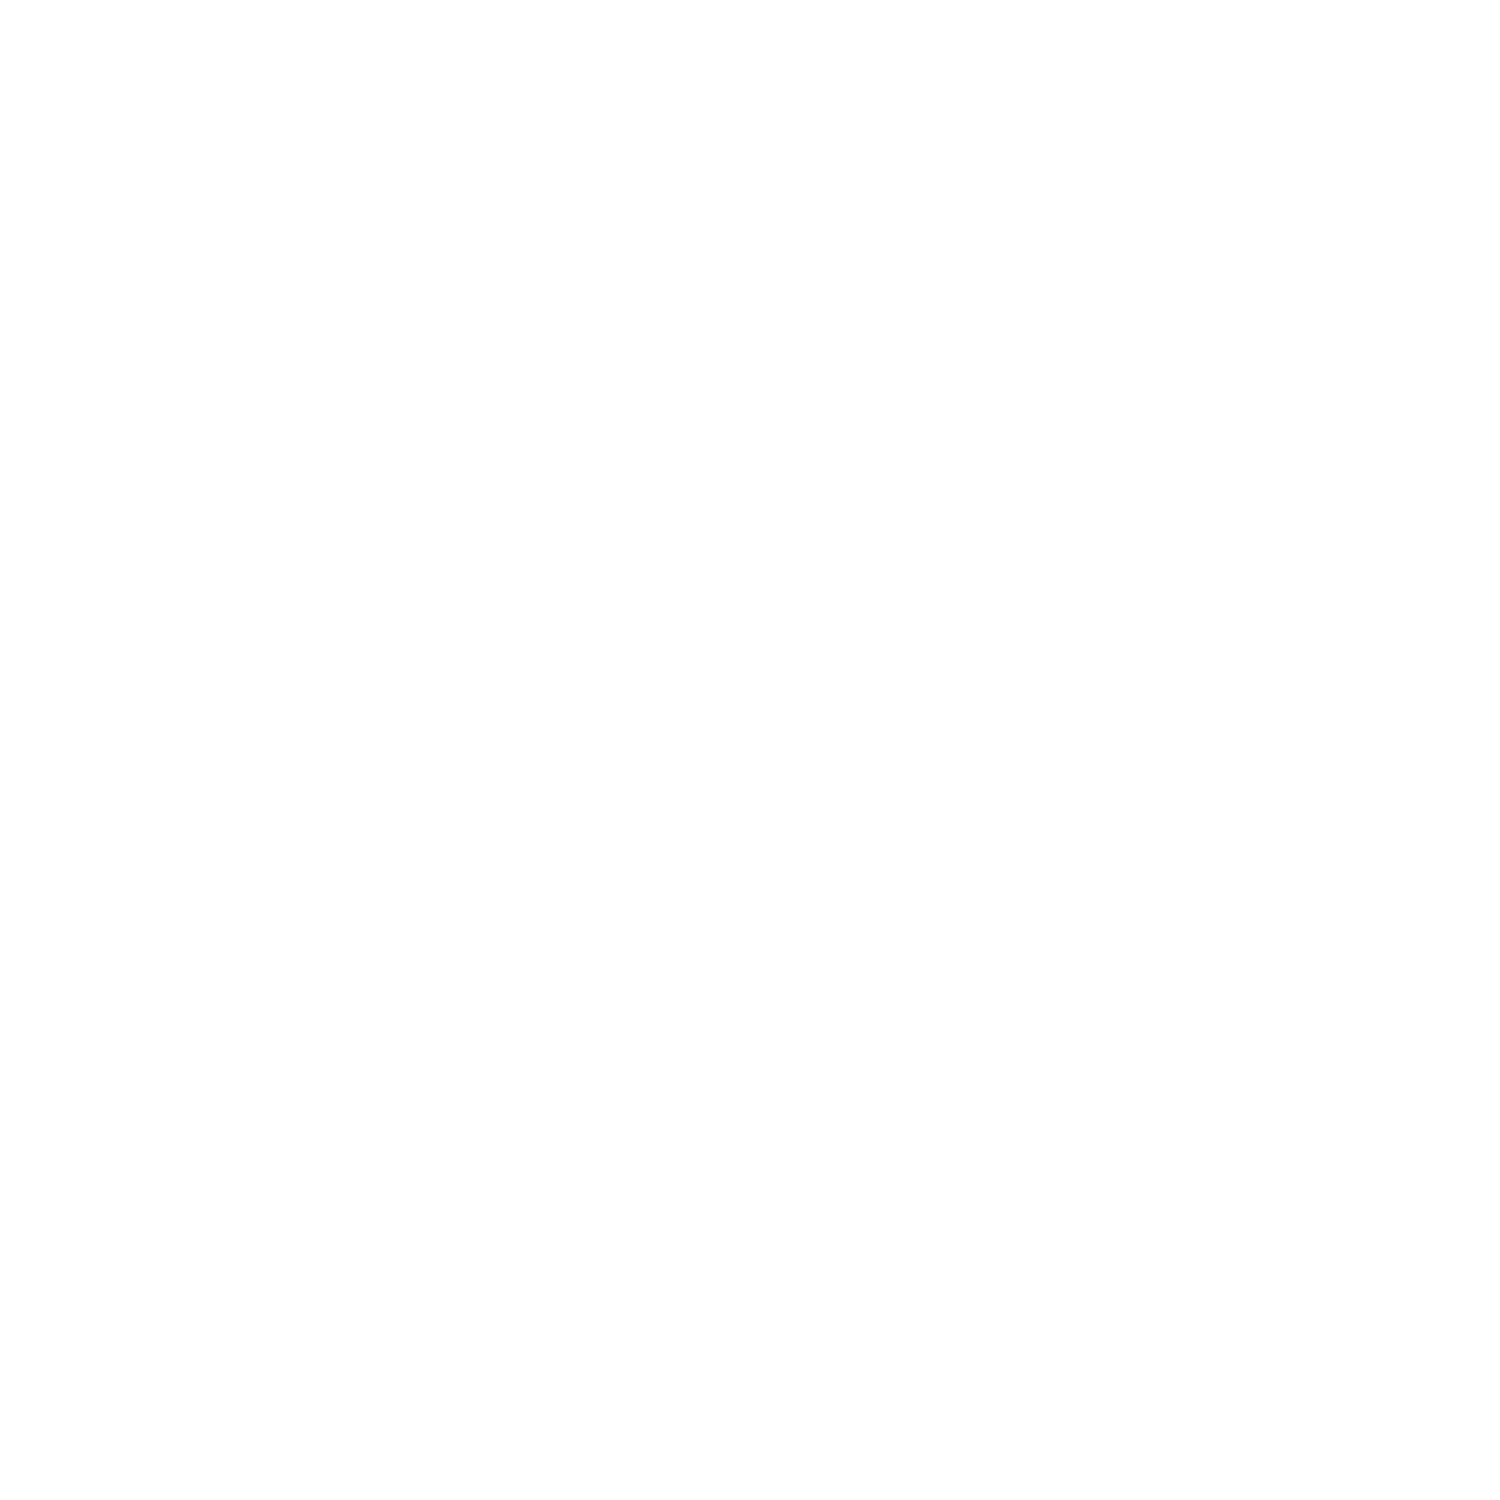 Intermountain Genetic Alliance